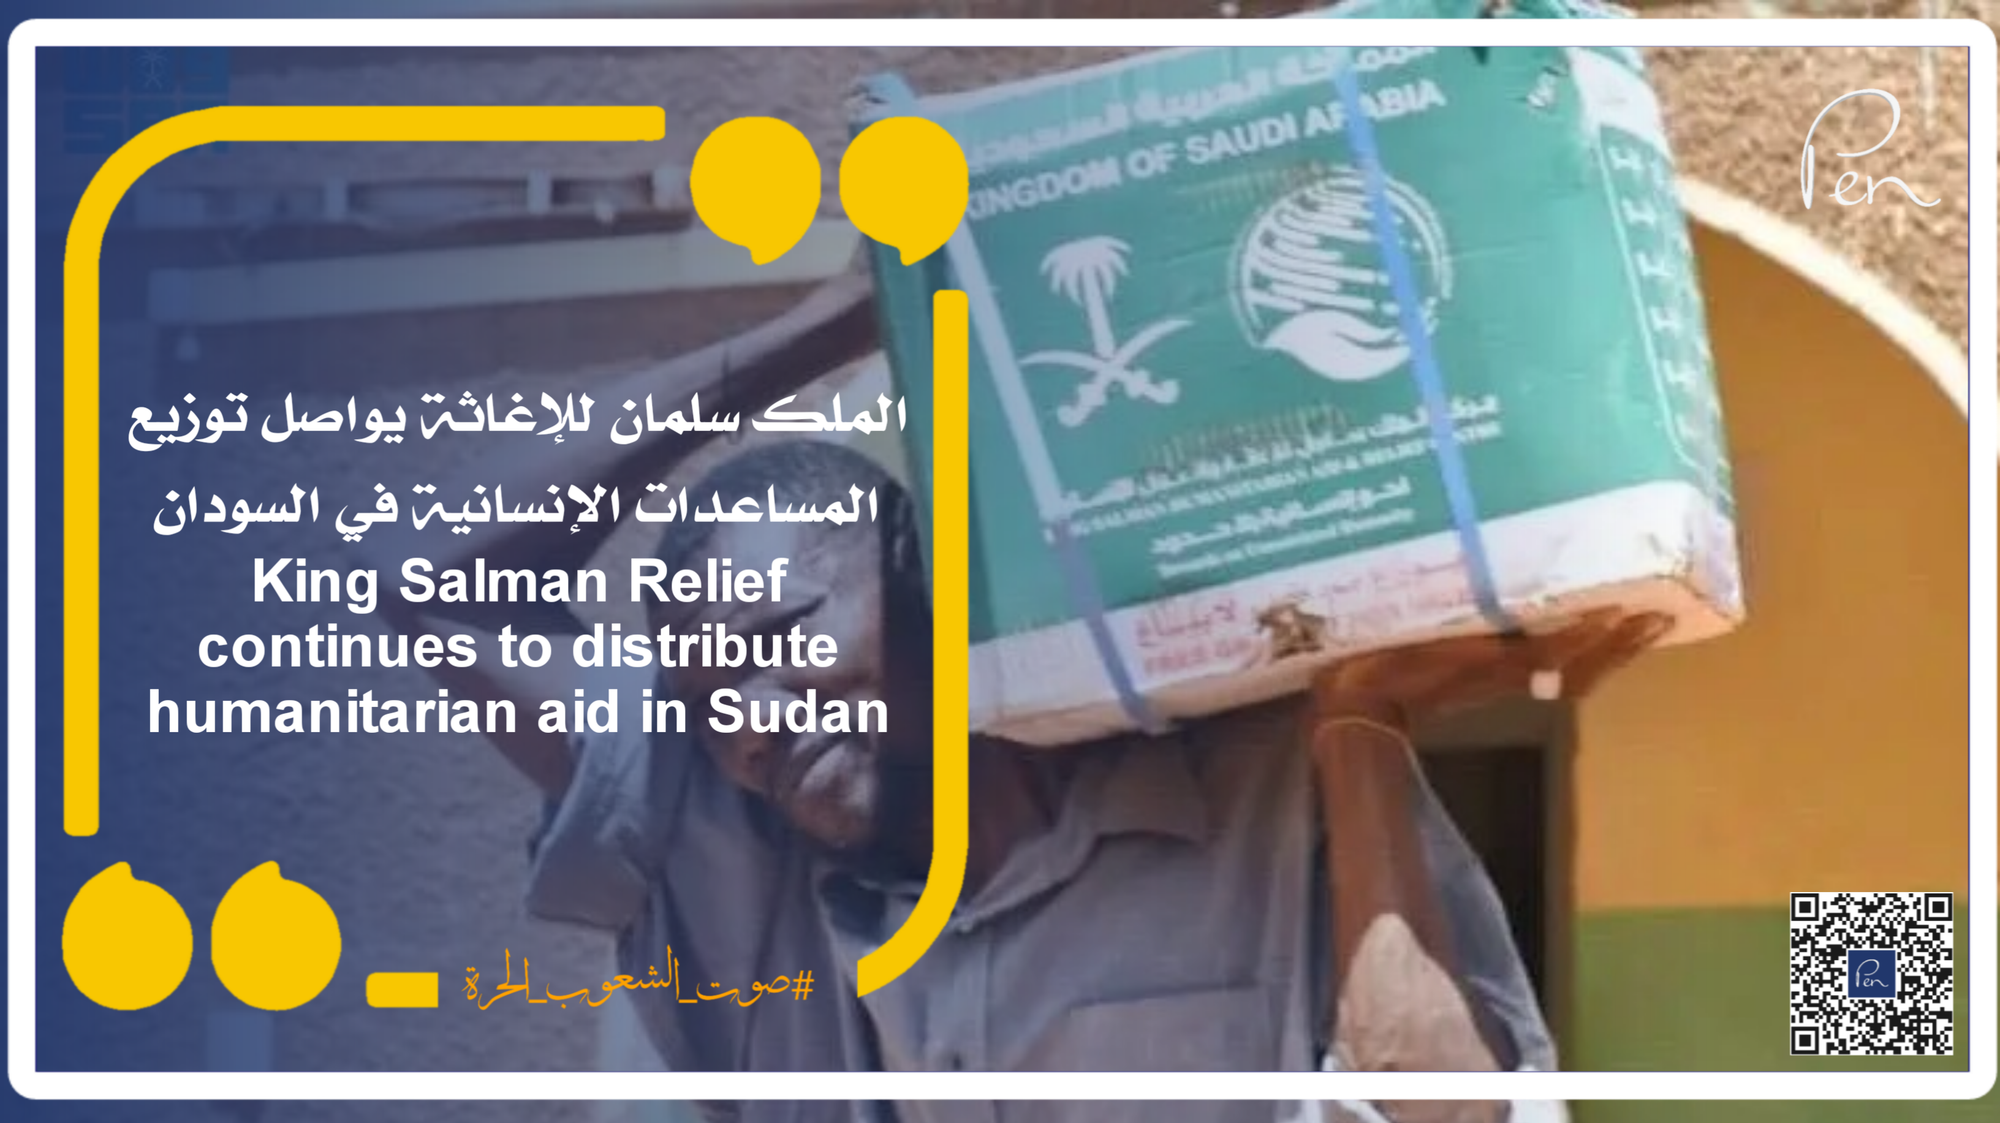 الملك سلمان للإغاثة يواصل توزيع المساعدات الإنسانية في السودان